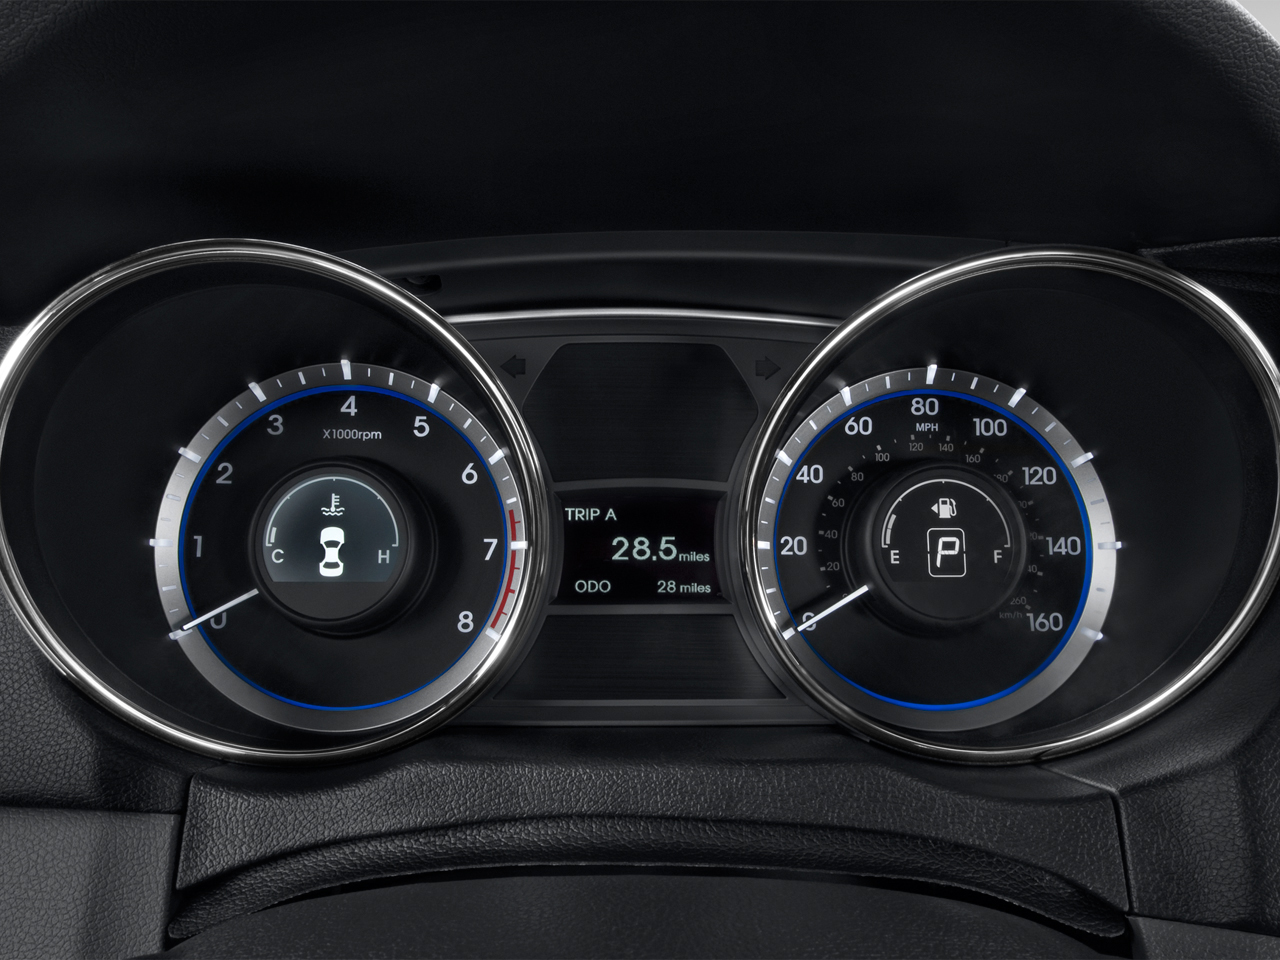 Đánh giá xe Hyundai Sonata 2013